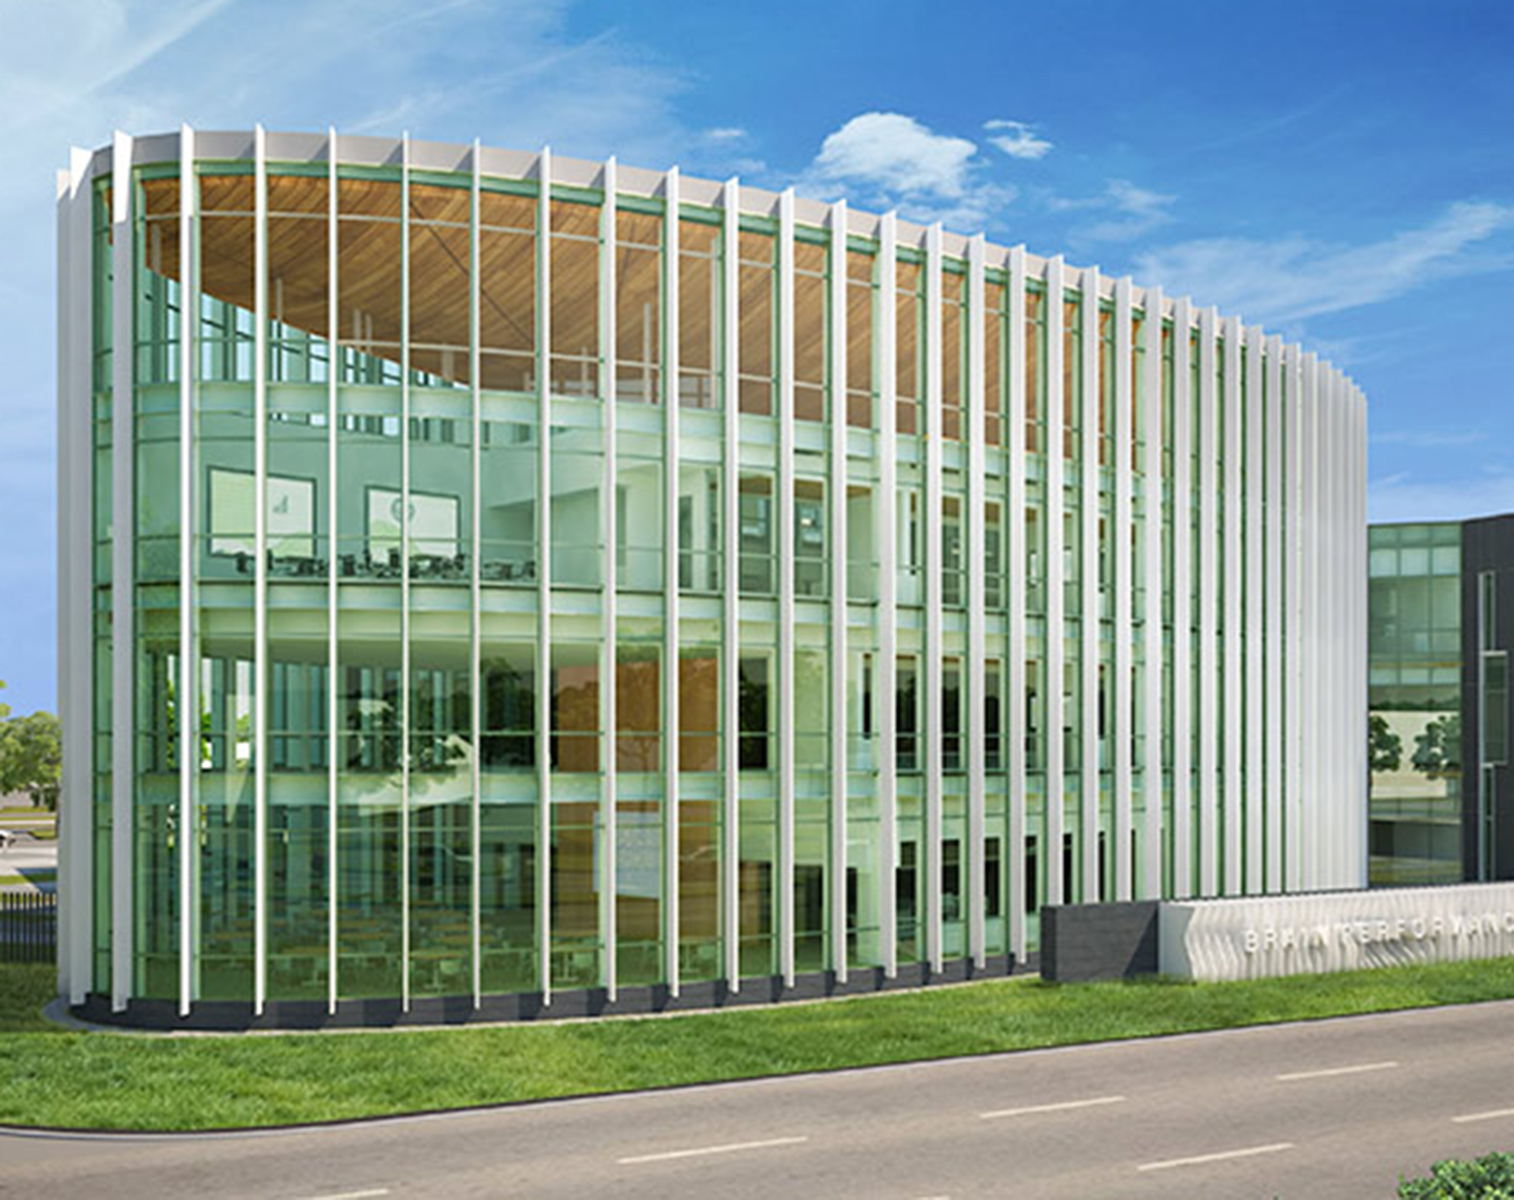 Brain Performance Institute Building